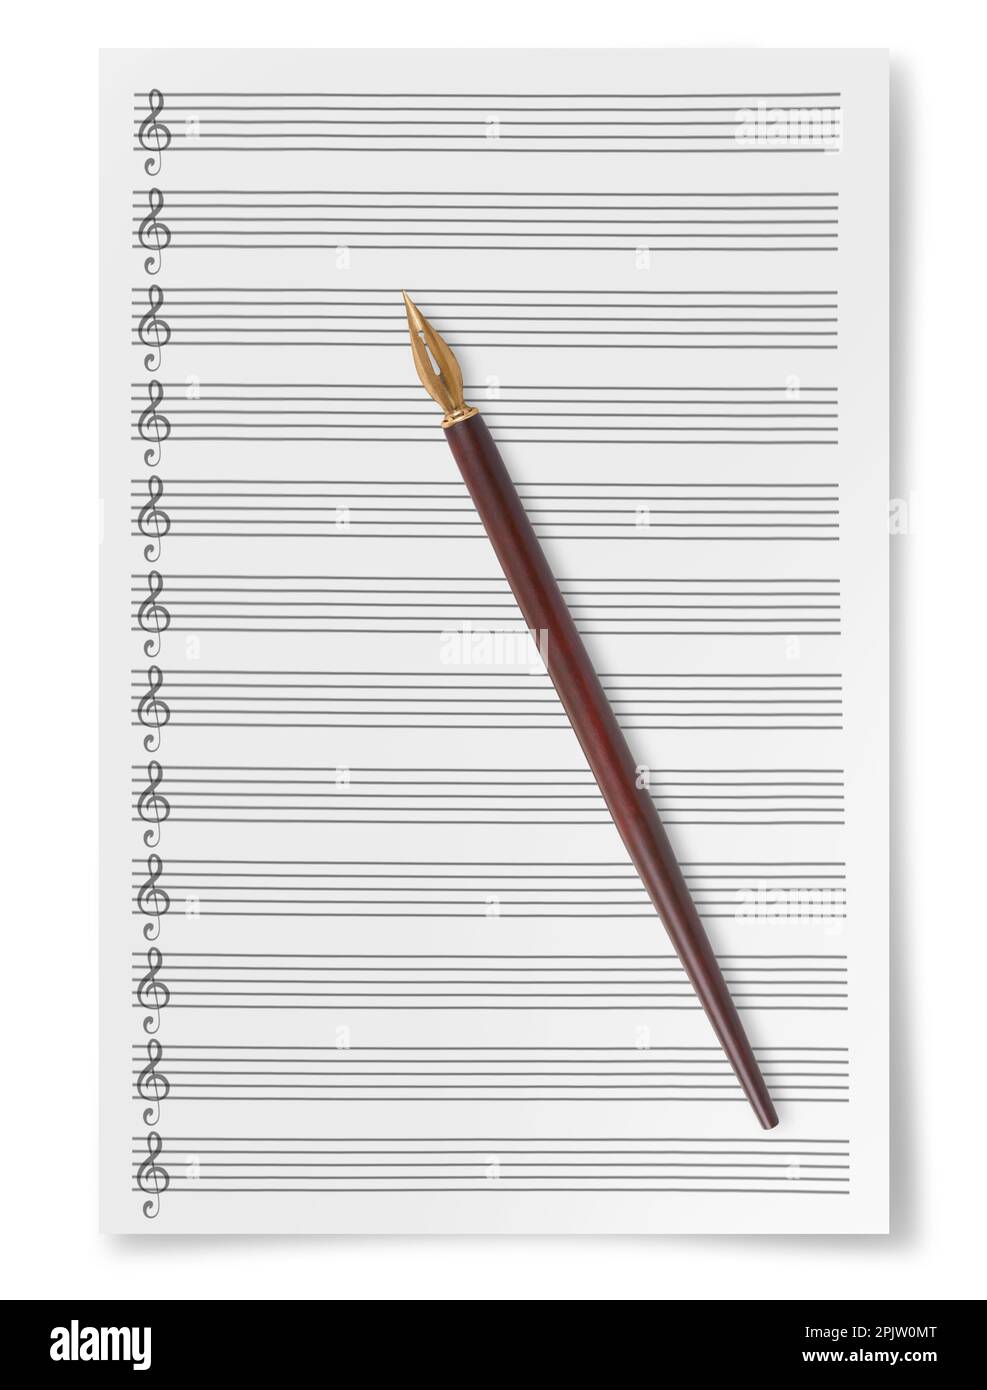 Blank Sheet Music Composition personale manoscritto con pennino isolato su sfondo bianco Foto Stock